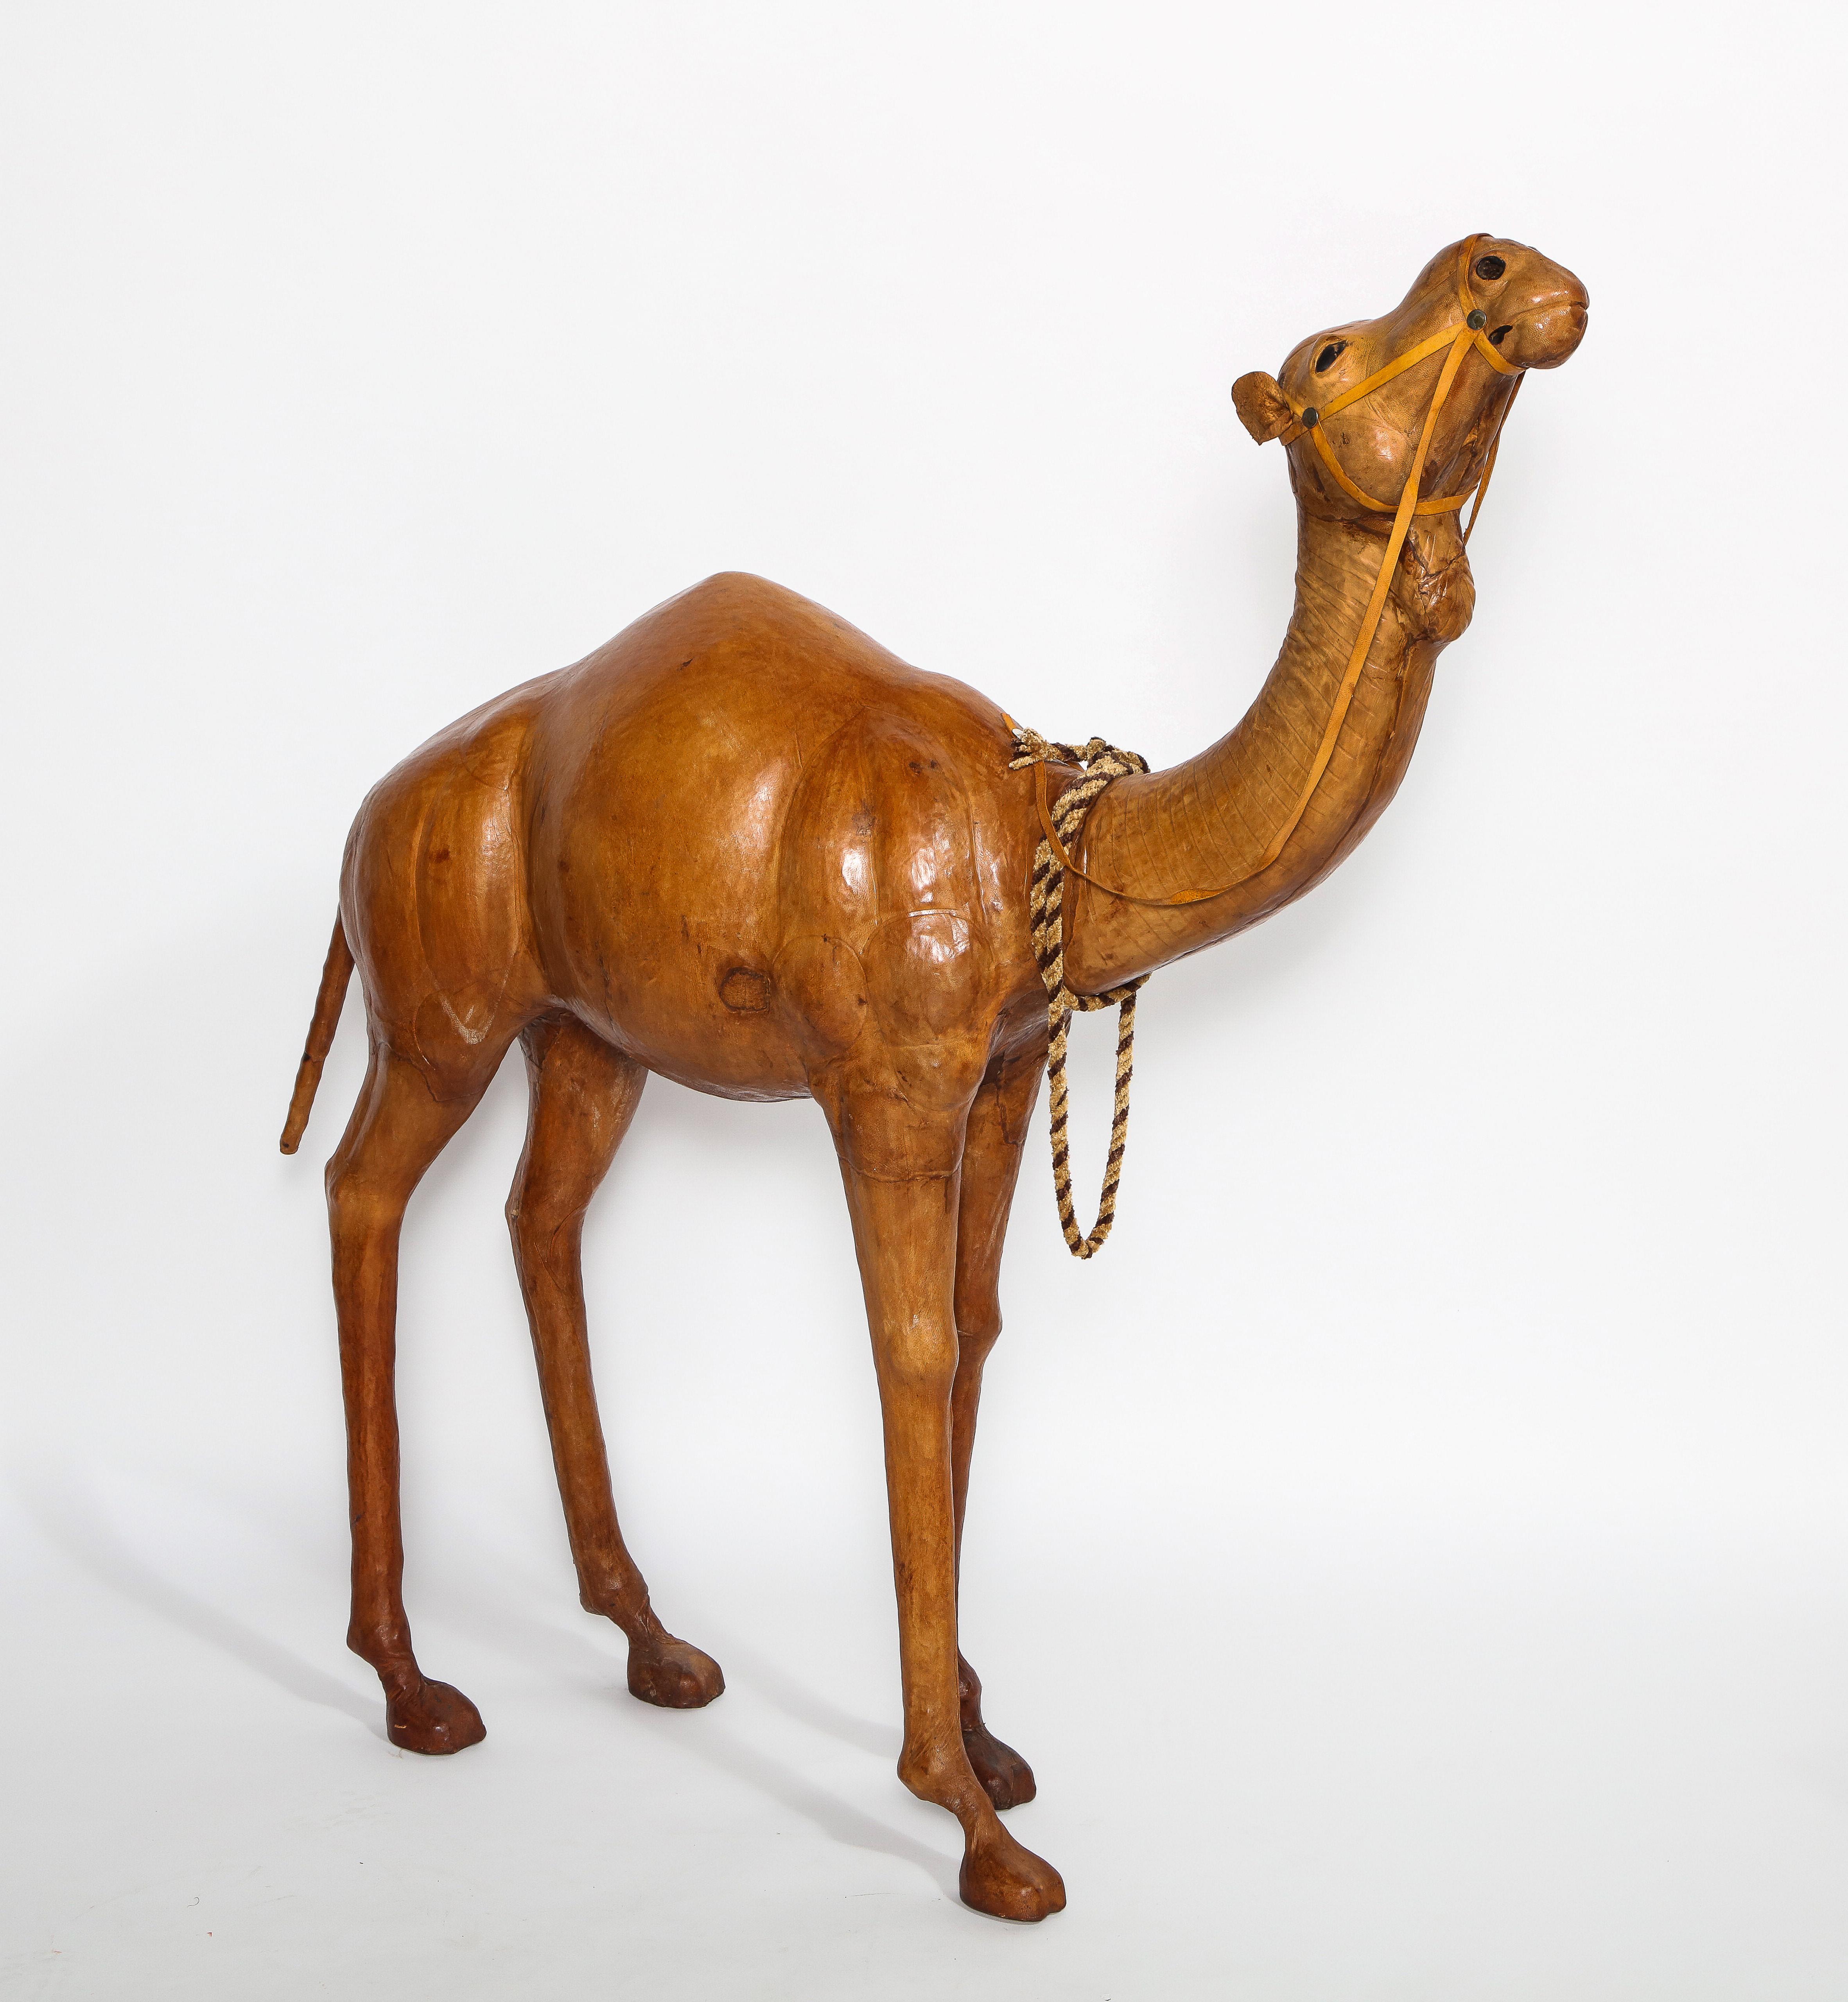 Un modèle très inhabituel et rare de chameau français des années 1940, en cuir tanné naturel. Il s'agit véritablement d'une pièce élaborée pour toute décoration intérieure. Cette pièce est fabriquée en cuir tanné naturellement, le tout cousu à la